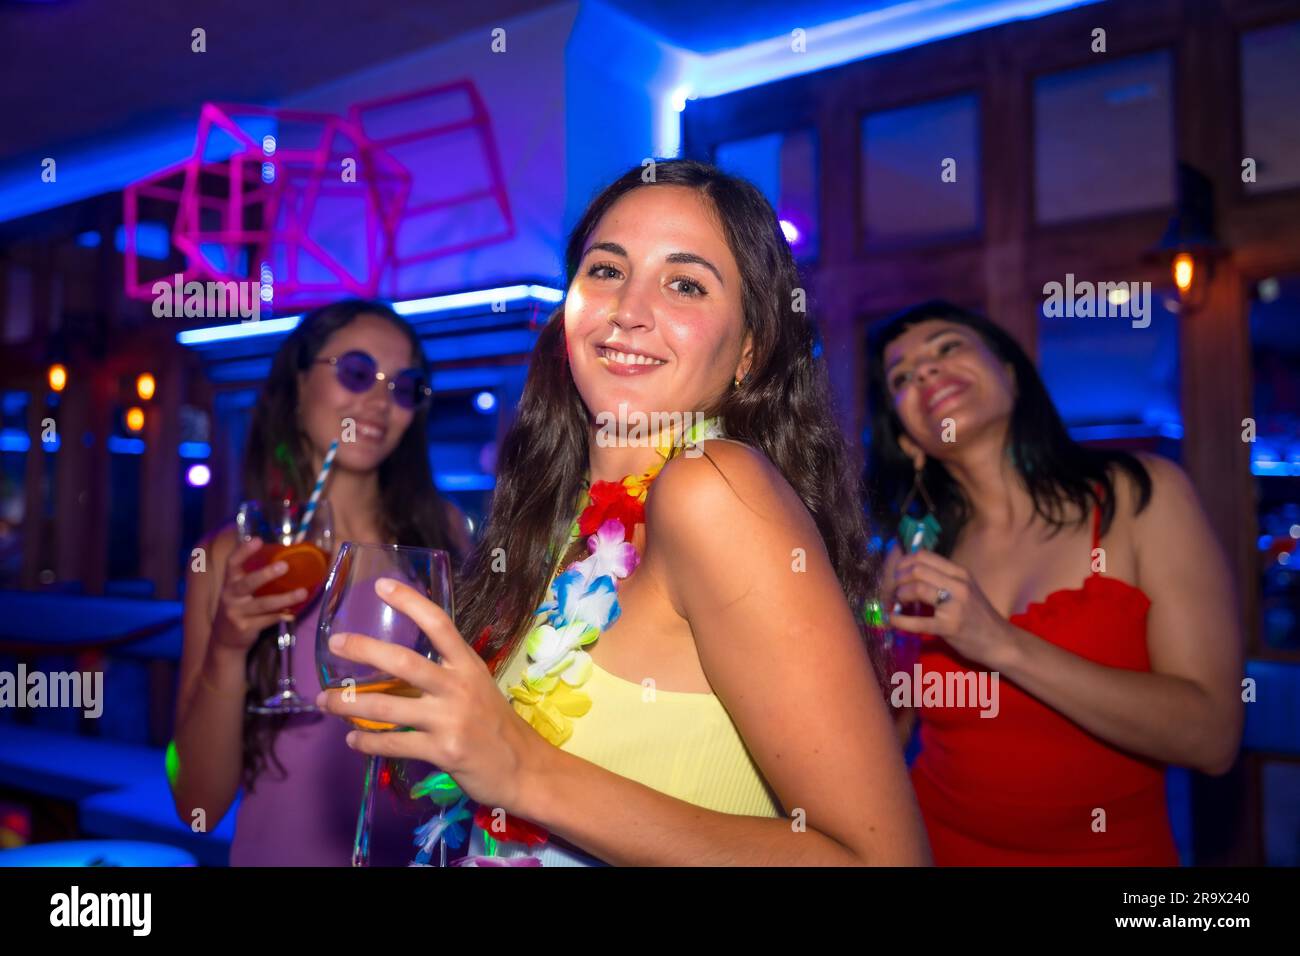 Portrait femme attrayante souriant avec un verre d'alcool dans une boîte de nuit lors d'une soirée Banque D'Images